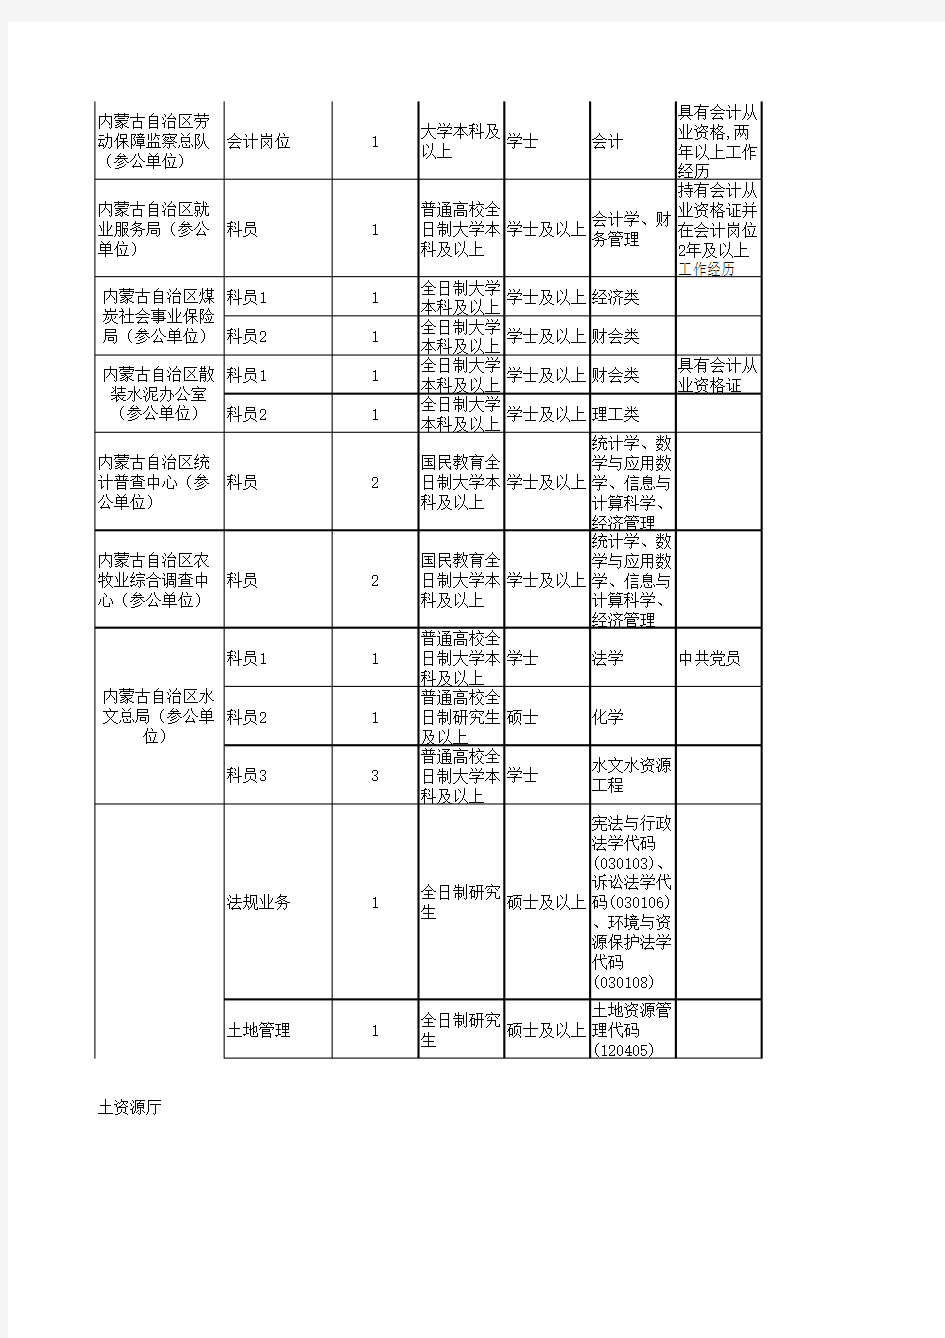 2015年内蒙古自治区党群机关、政府系统、法院、检察院考试录用公务员和工作人员职位表